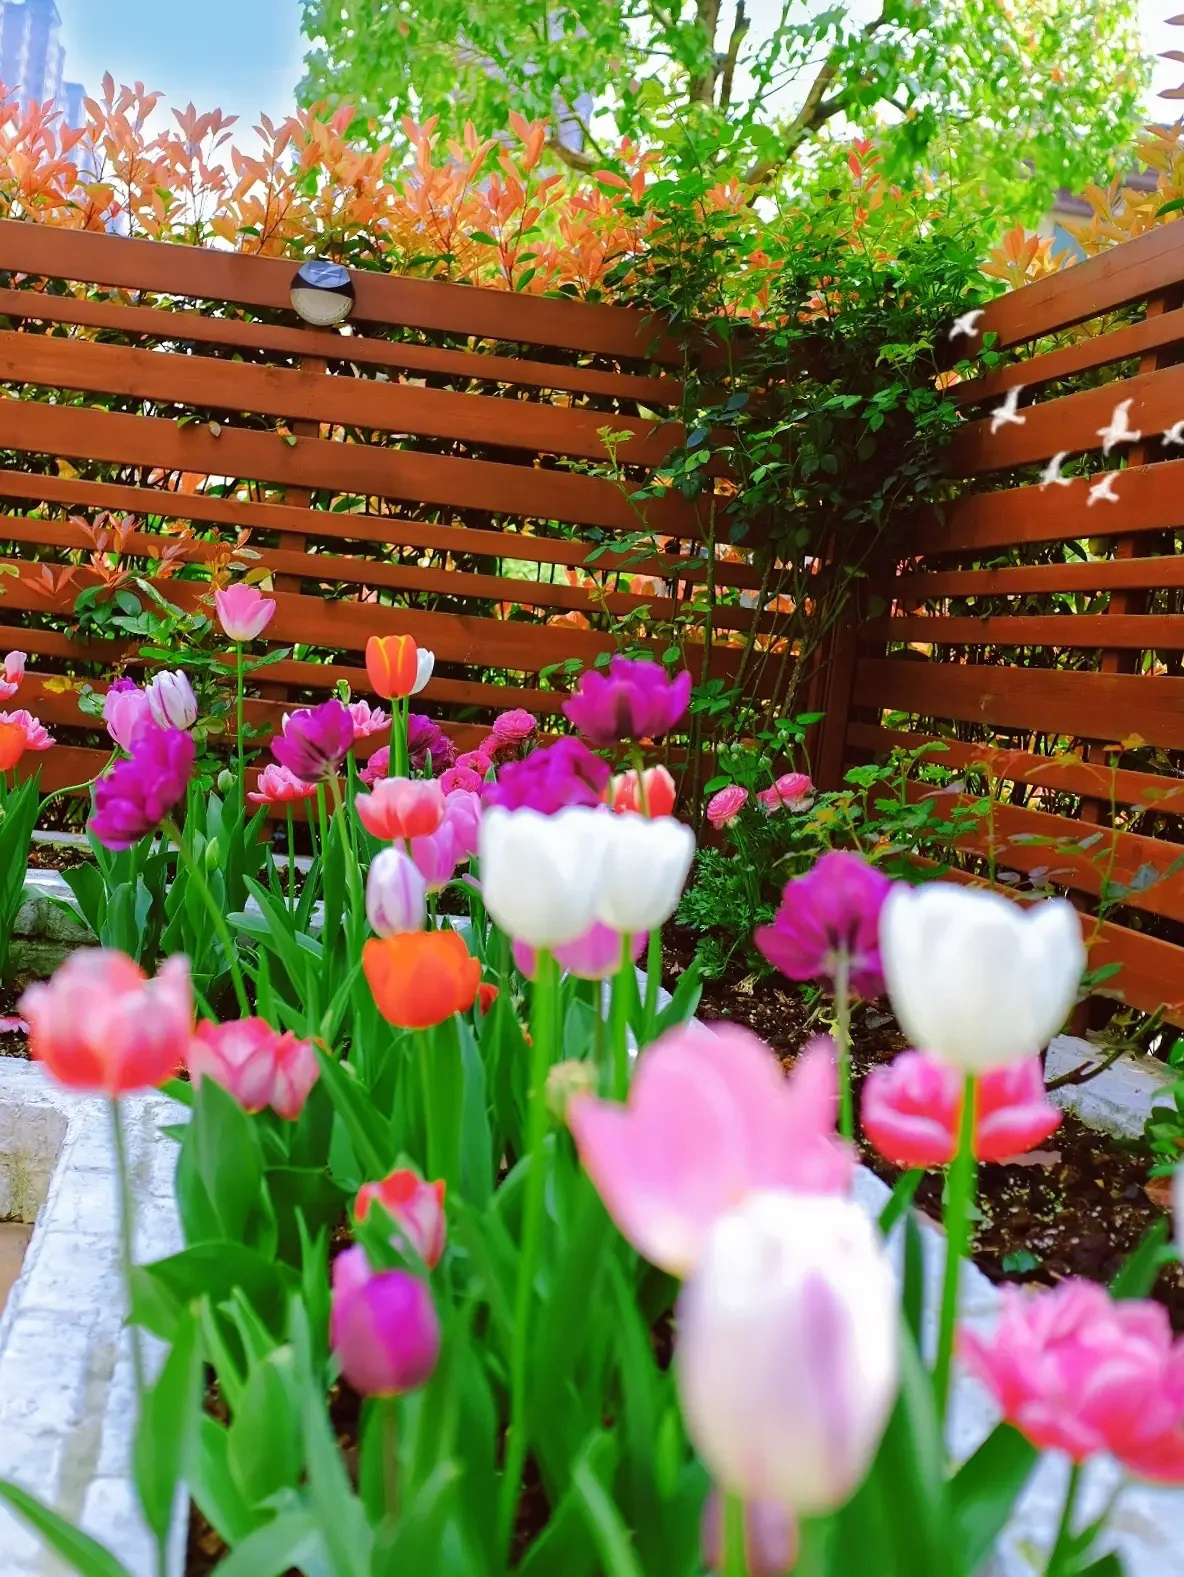 Khoe khu vườn 200 cây hoa tulip, cô gái nhận bão like từ công đồng mạng - Ảnh 6.